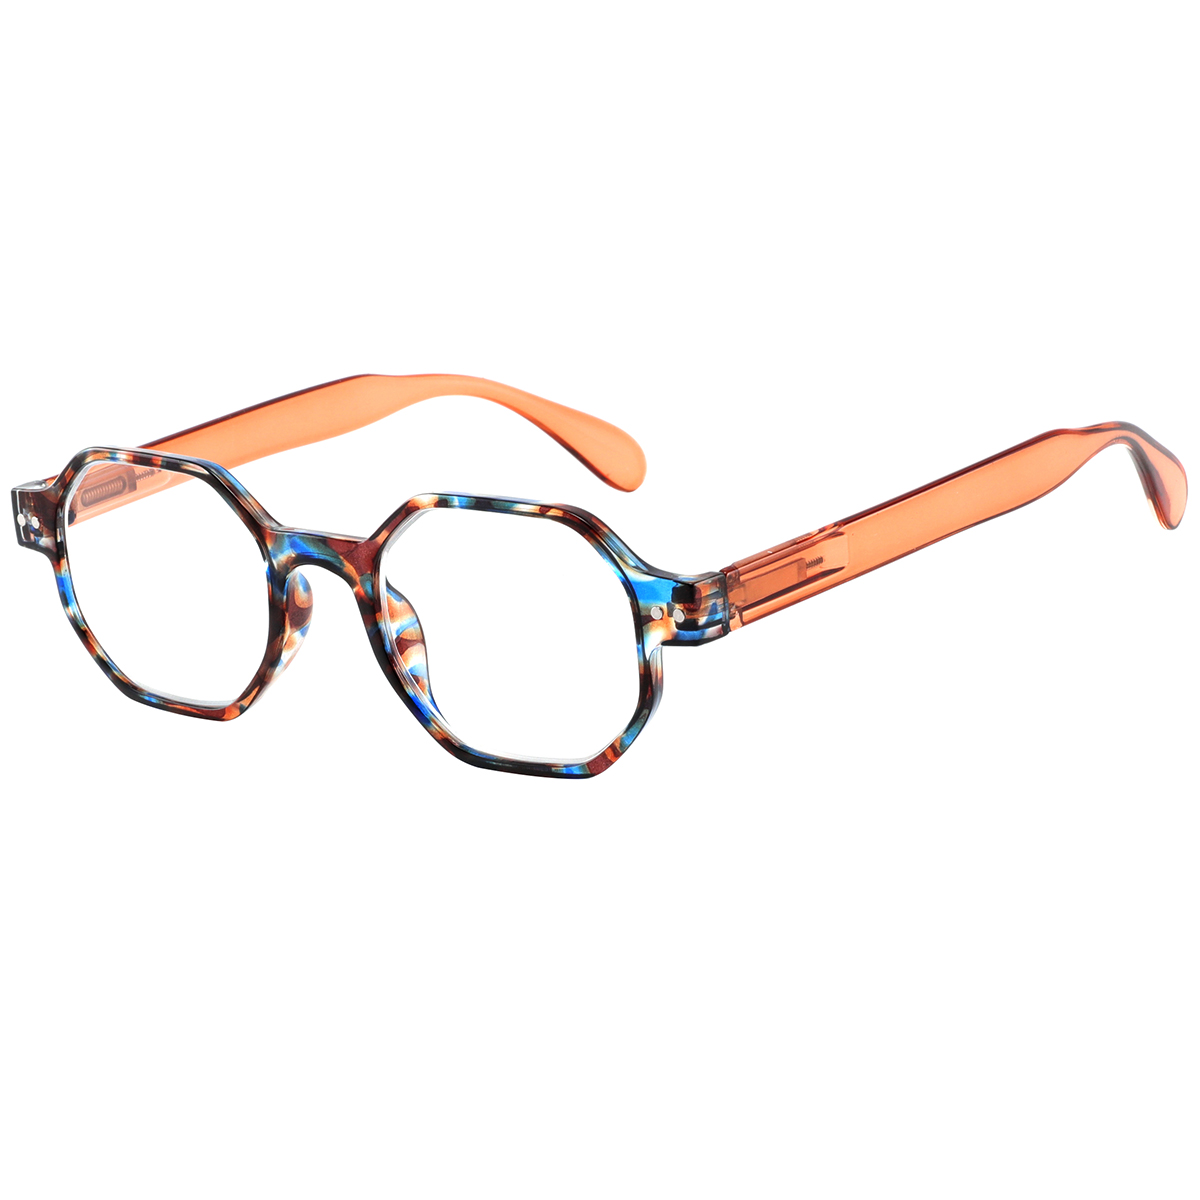 Deva - Geometric Demi-Pink Reading Glasses for Women